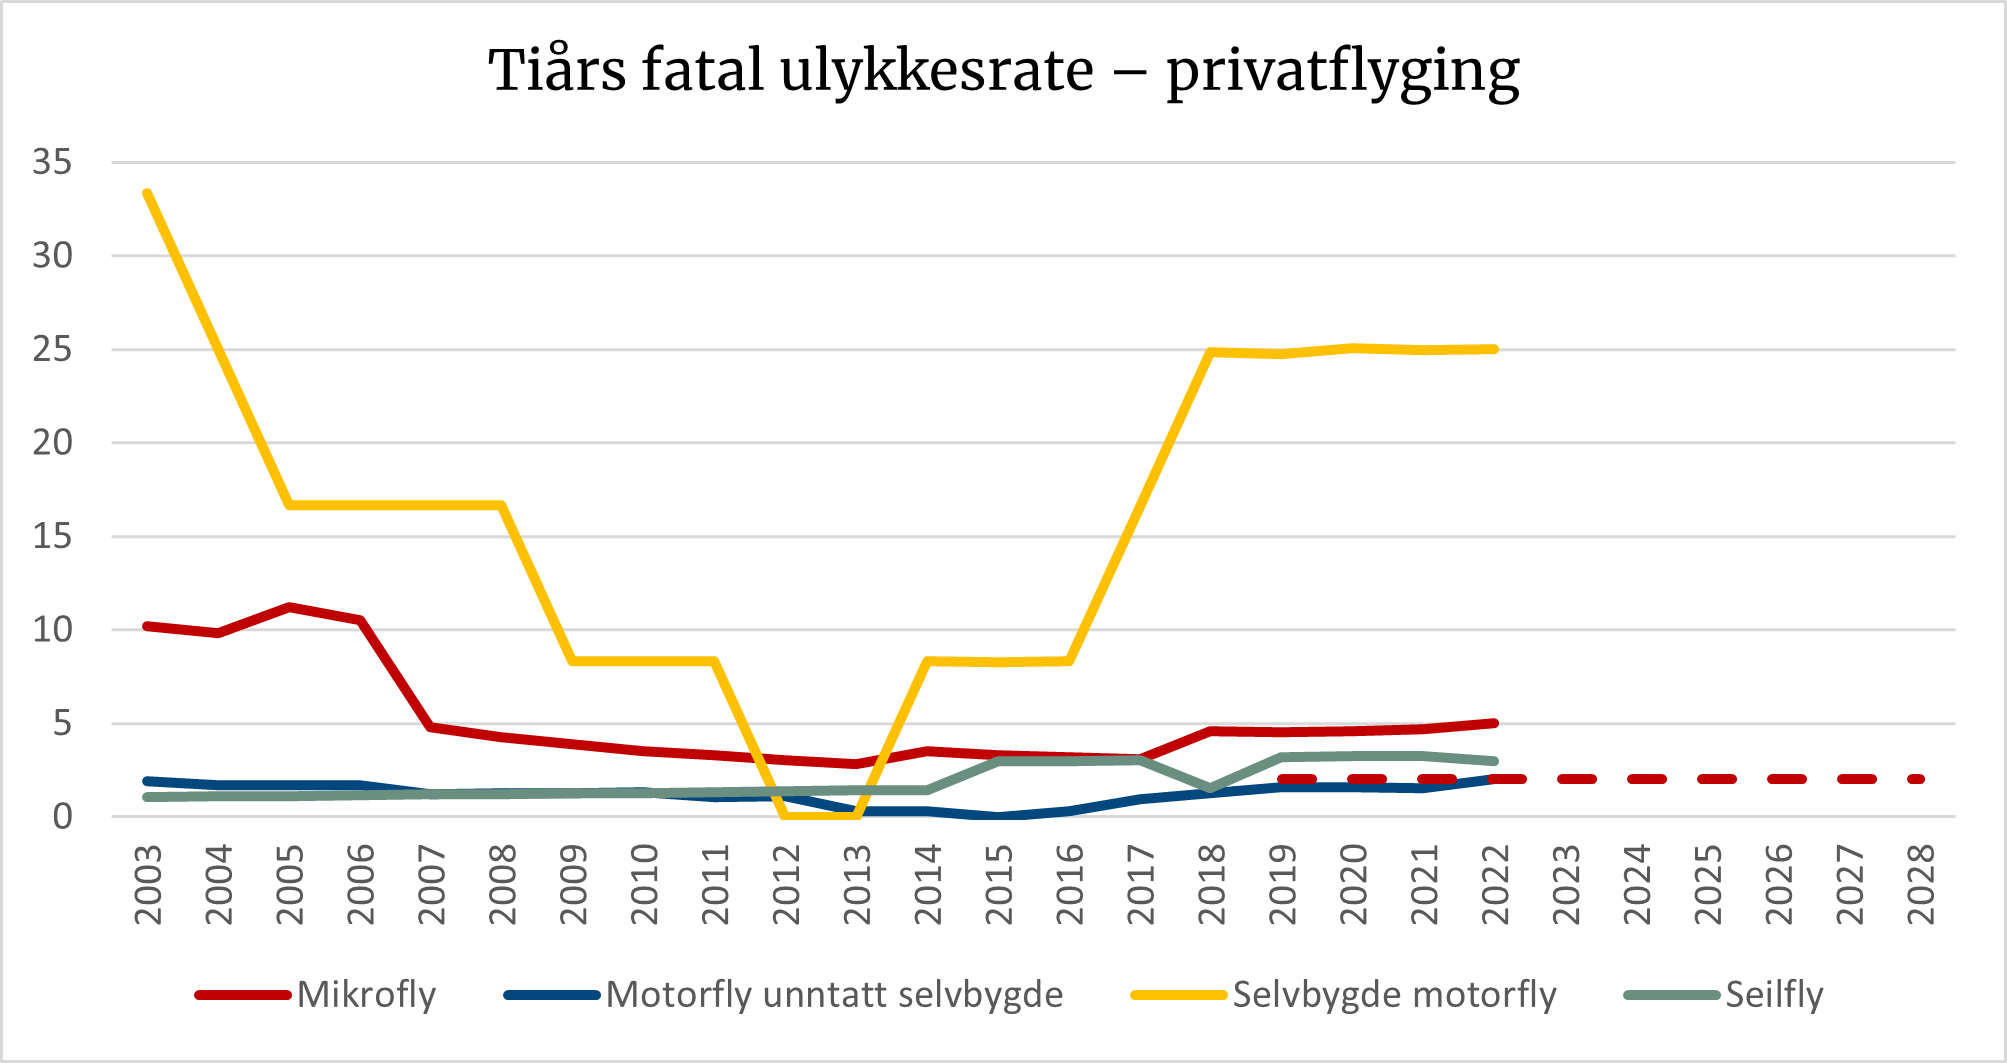 Diagrammet viser en oversikt over tiårs fatal ulykkesrate innen privatflyging som inkluderer mikrofly. Målet for den fatale ulykkesraten for mikrofly i 2019–2028 er enda ikke nådd.